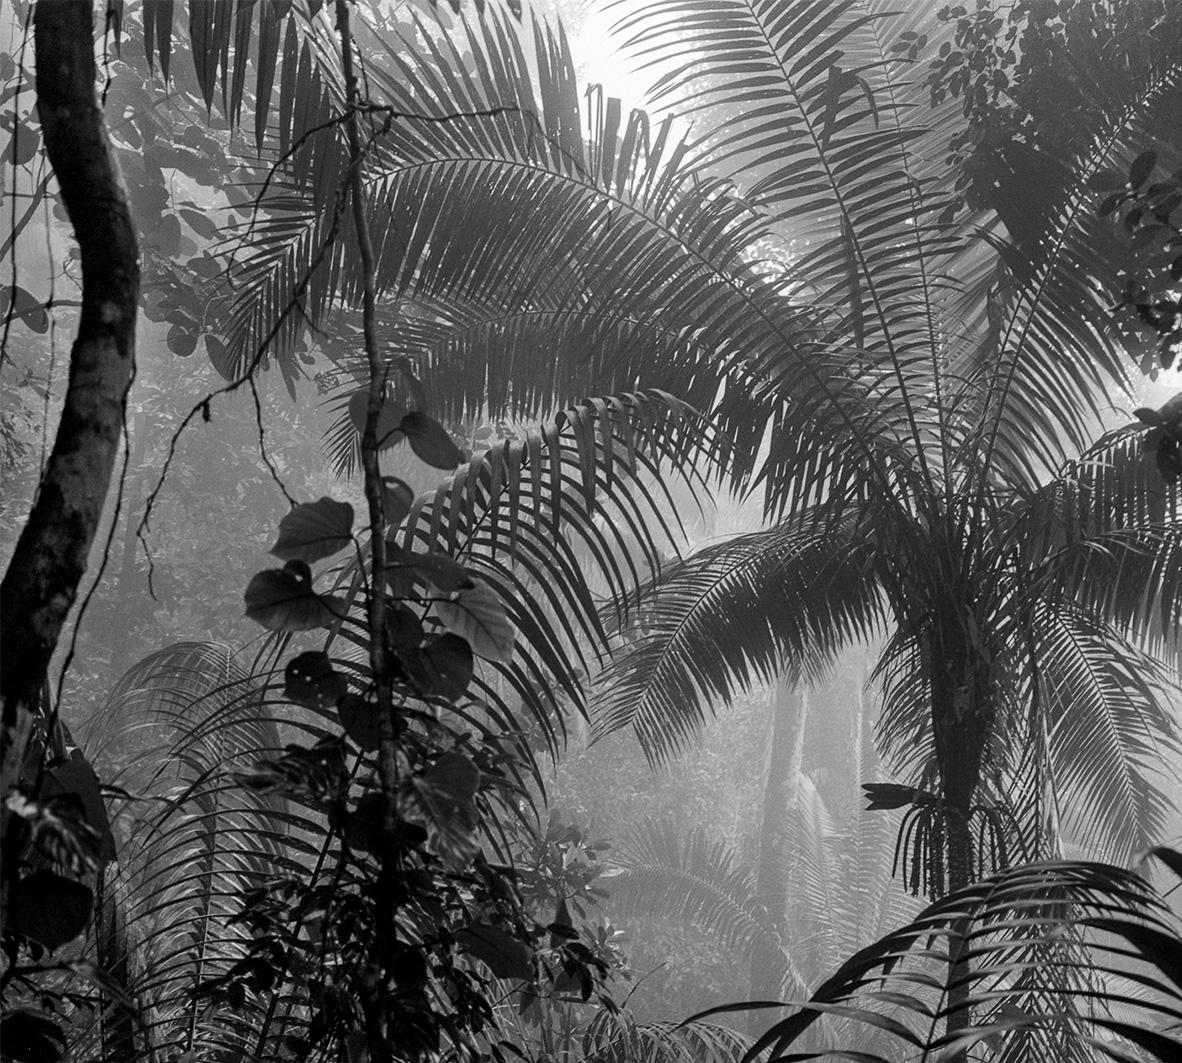 Bosque Húmedo Tropical II Nuquí, Silver Gelatin Print - Photograph by Miguel Winograd 